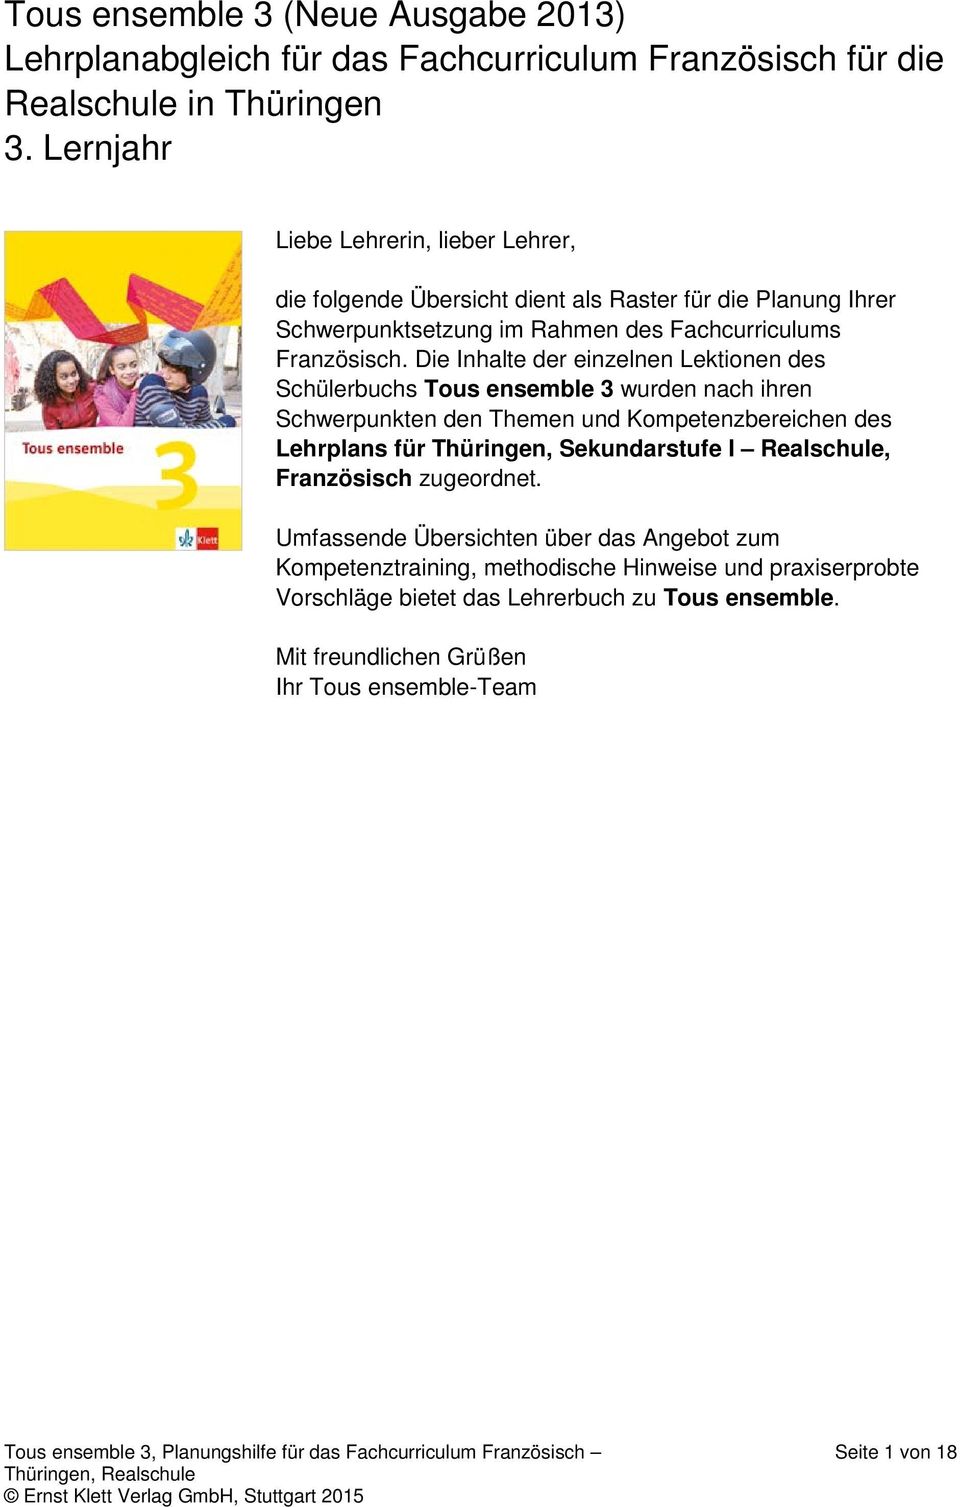 Die Inhalte der einzelnen Lektionen des Schülerbuchs Tous ensemble 3 wurden nach ihren Schwerpunkten den Themen und Kompetenzbereichen des Lehrplans für Thüringen, Sekundarstufe I